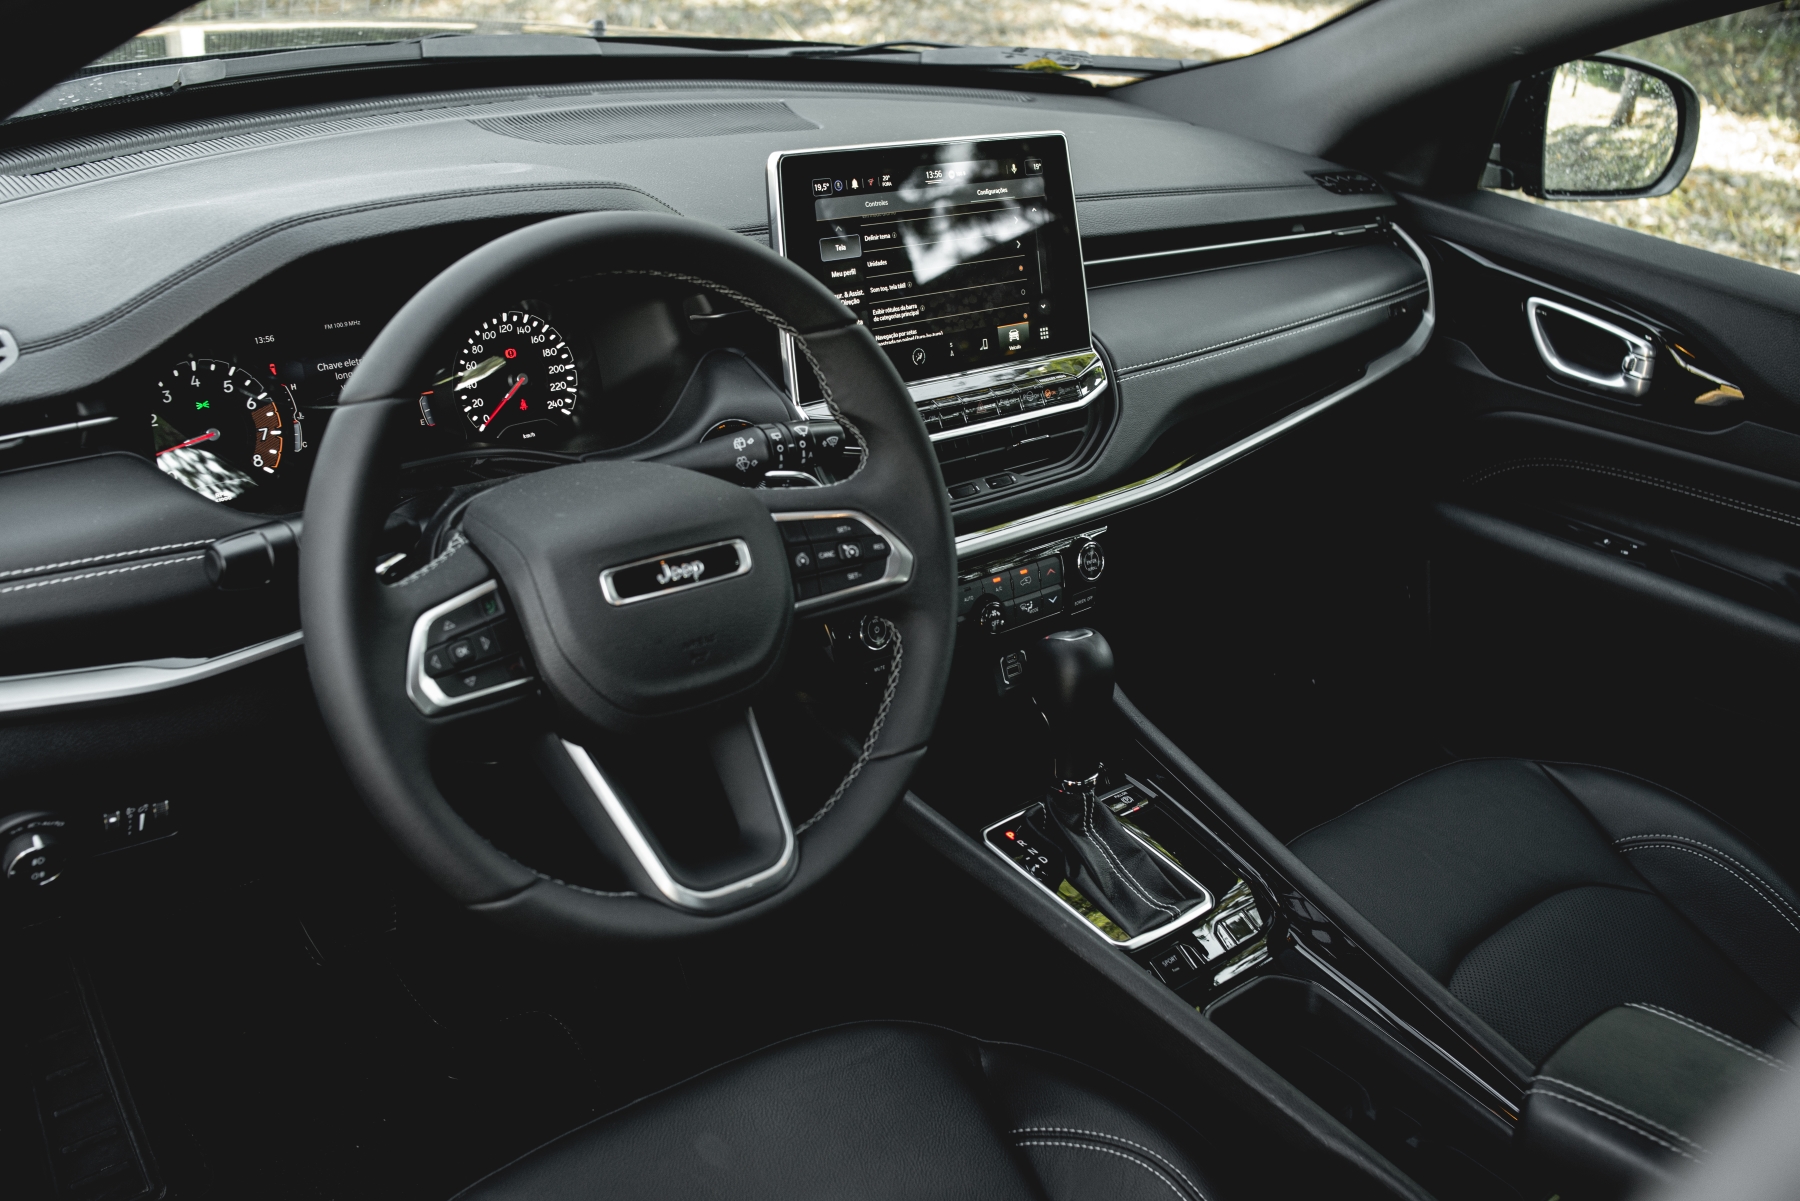 Sistema Multimídia do Jeep Compass 1.3 turbo modelo 2012; para matéria de cuidados com o carro em dias de calor extremo.